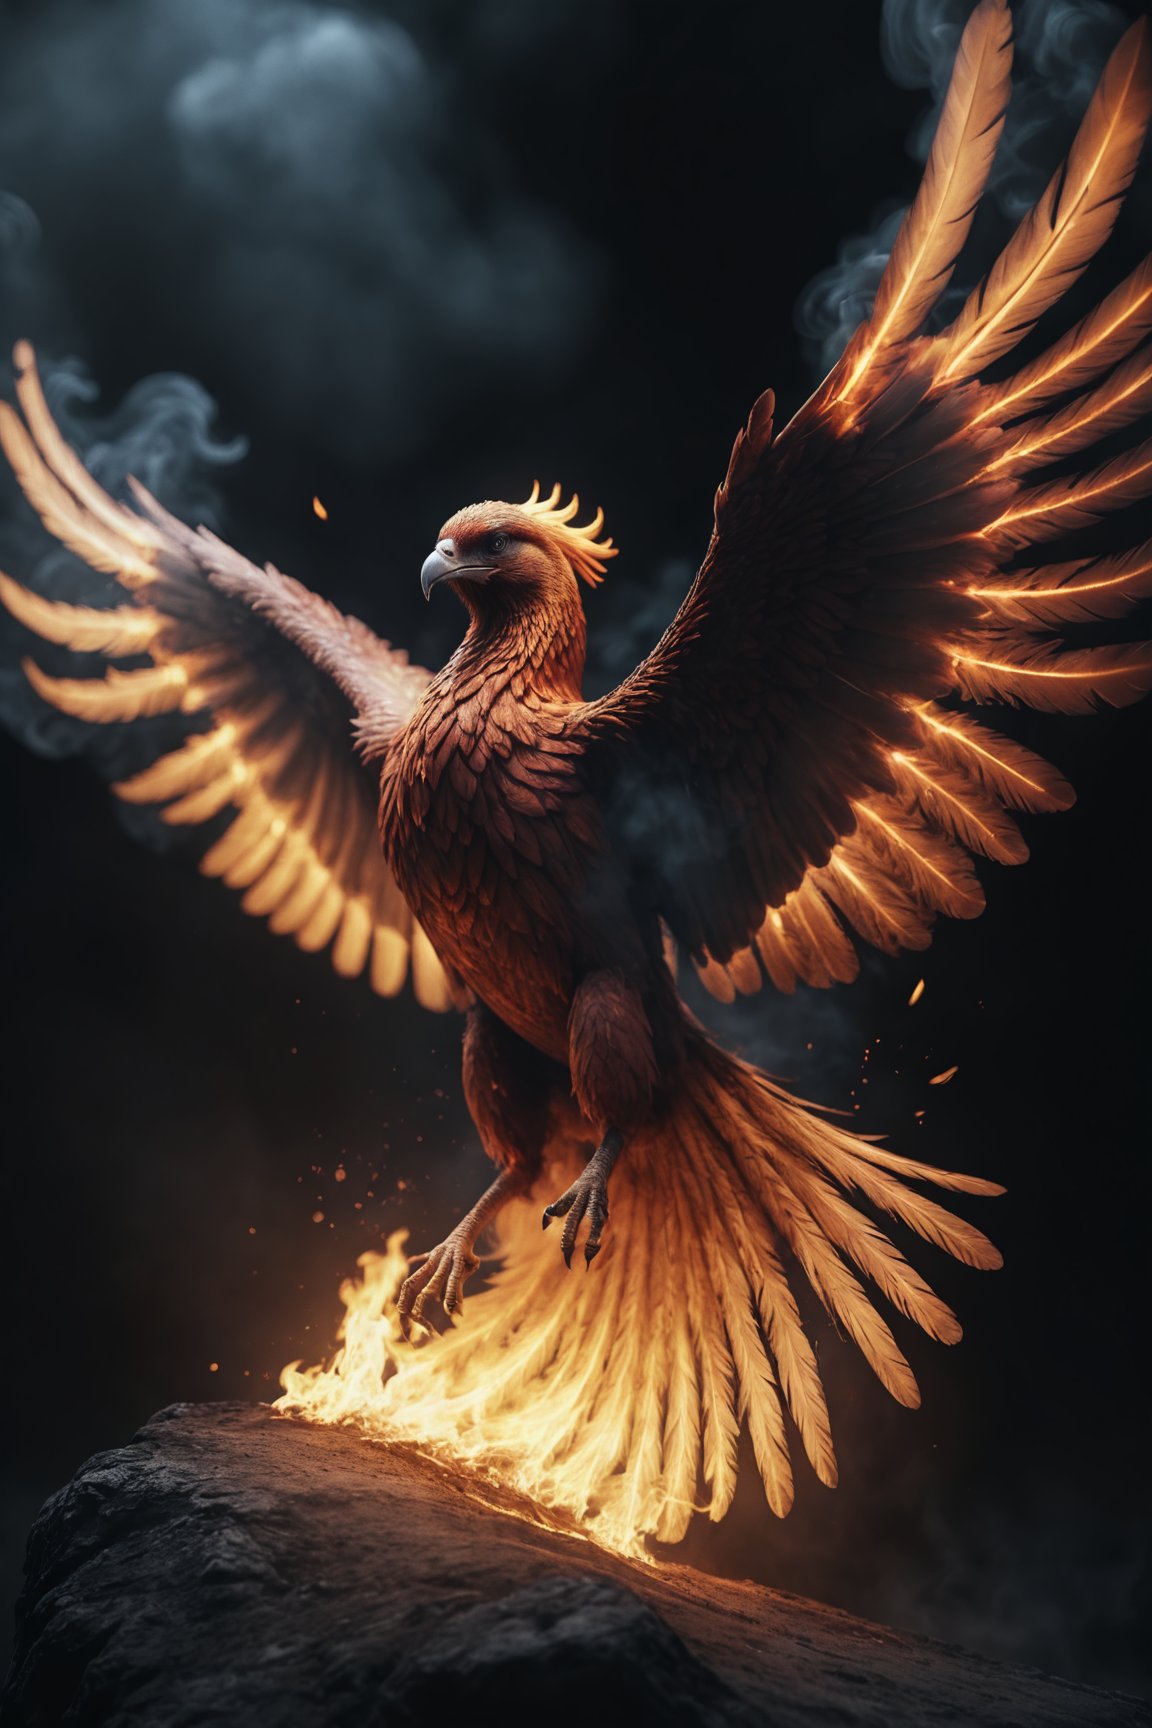 photo, a burning phoenix, flying burning feathers, epic, dark atmosphere, cinematic